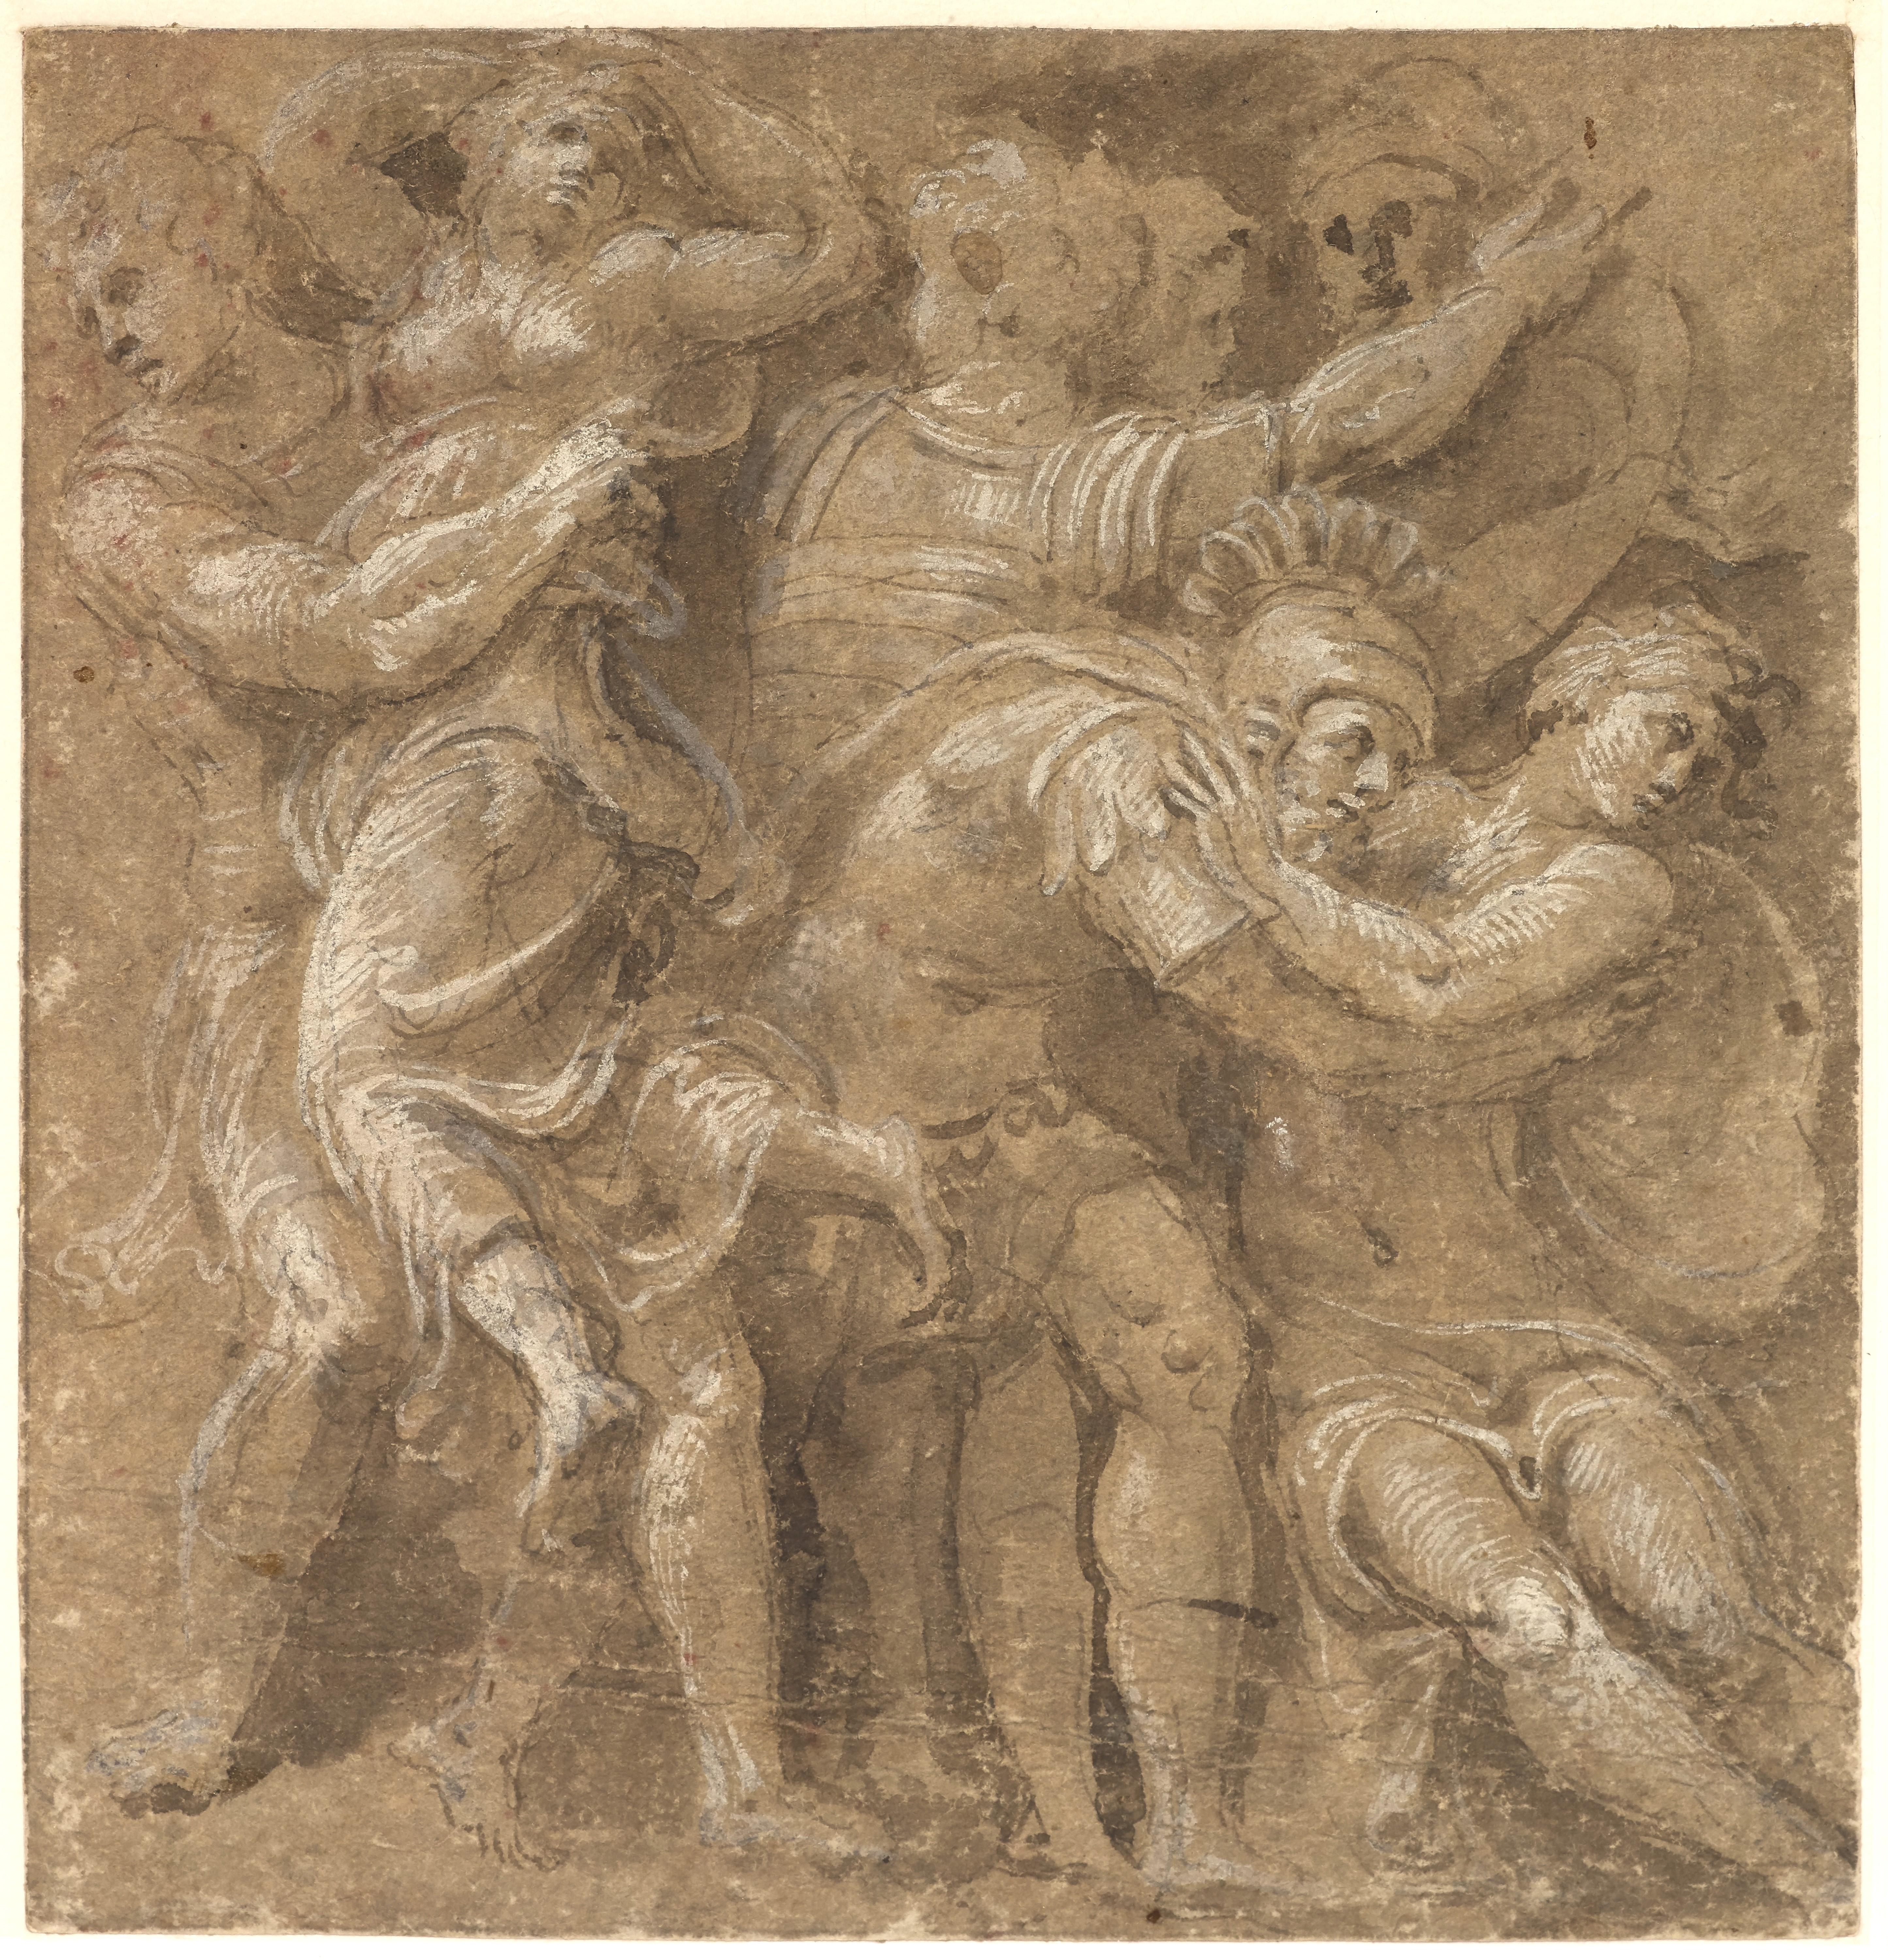 Ce dessin vigoureux a longtemps été attribué à Polidoro da Caravaggio : L'Enlèvement des femmes sabines est l'une des scènes que Polidoro a représentées entre 1525 et 1527 sur la façade du palais Milesi à Rome. Cependant, la proximité d'un autre